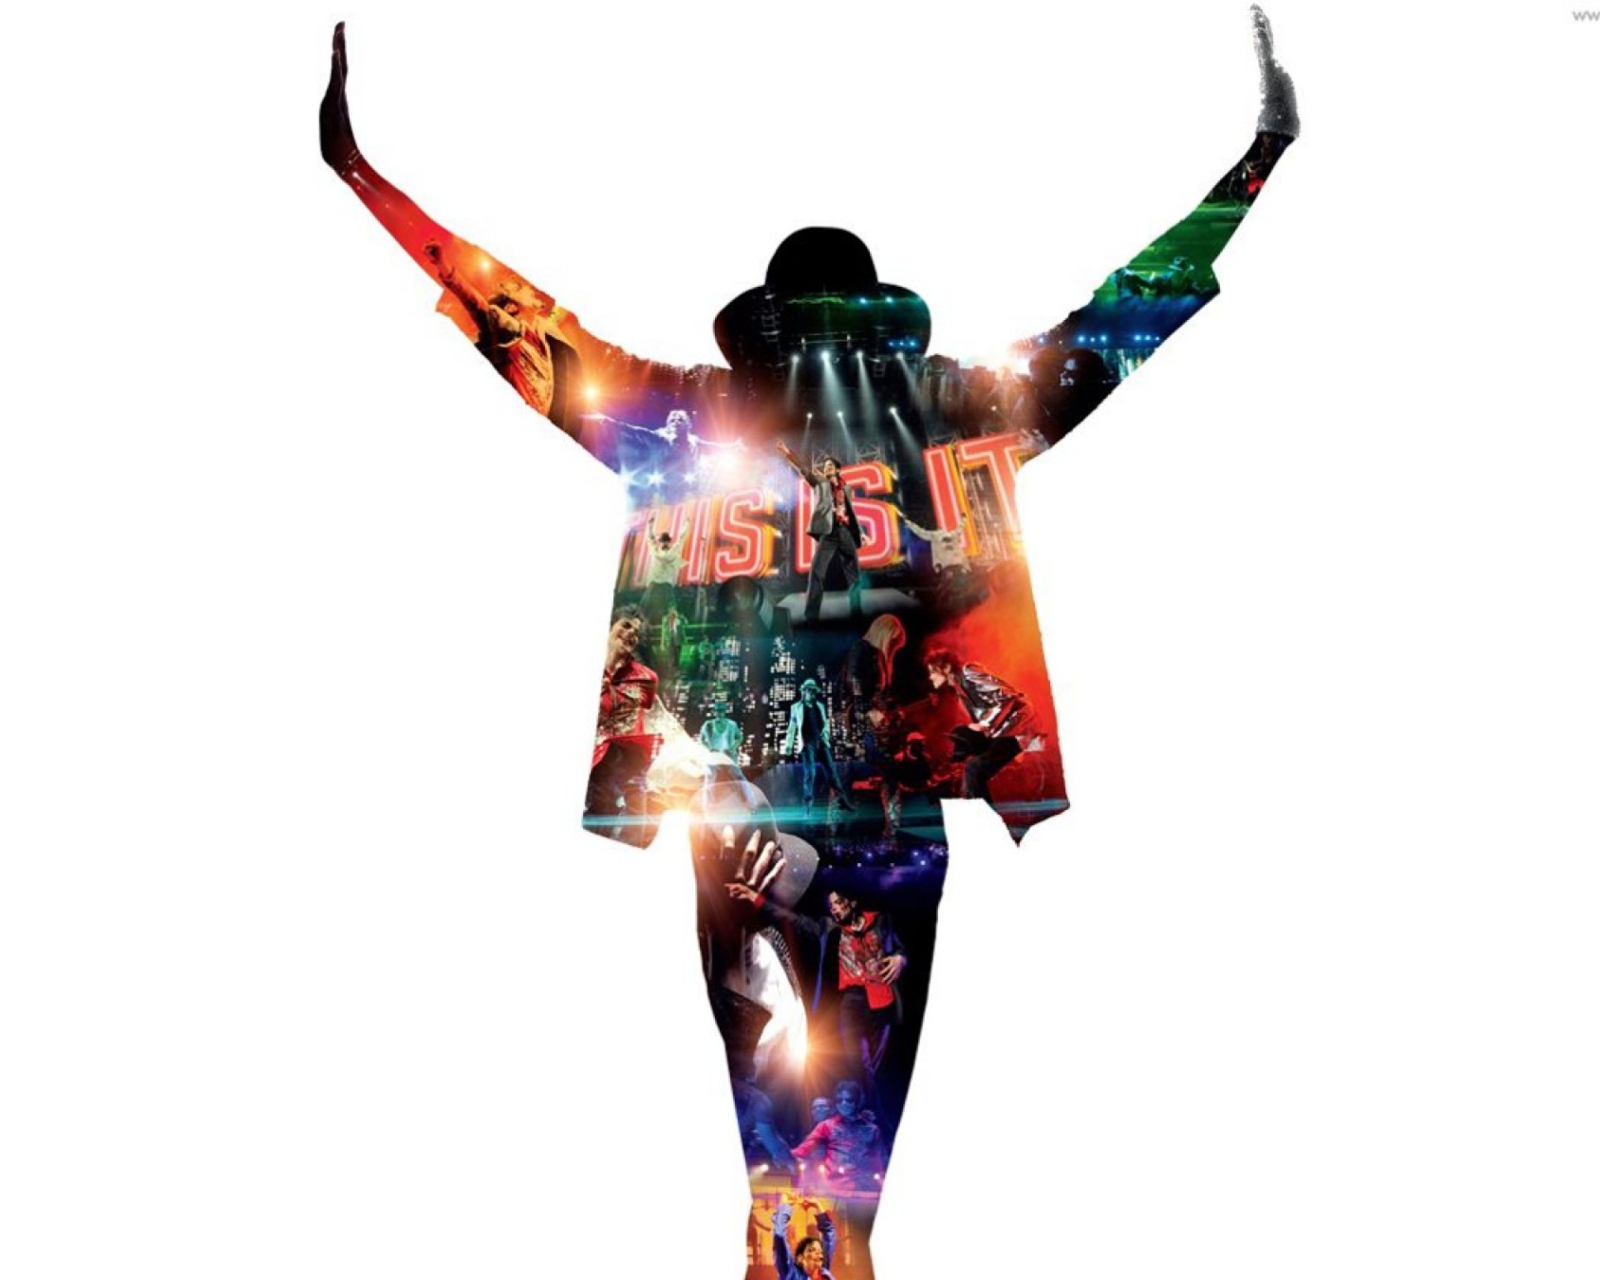 Michael Jackson wallpaper 1600x1280